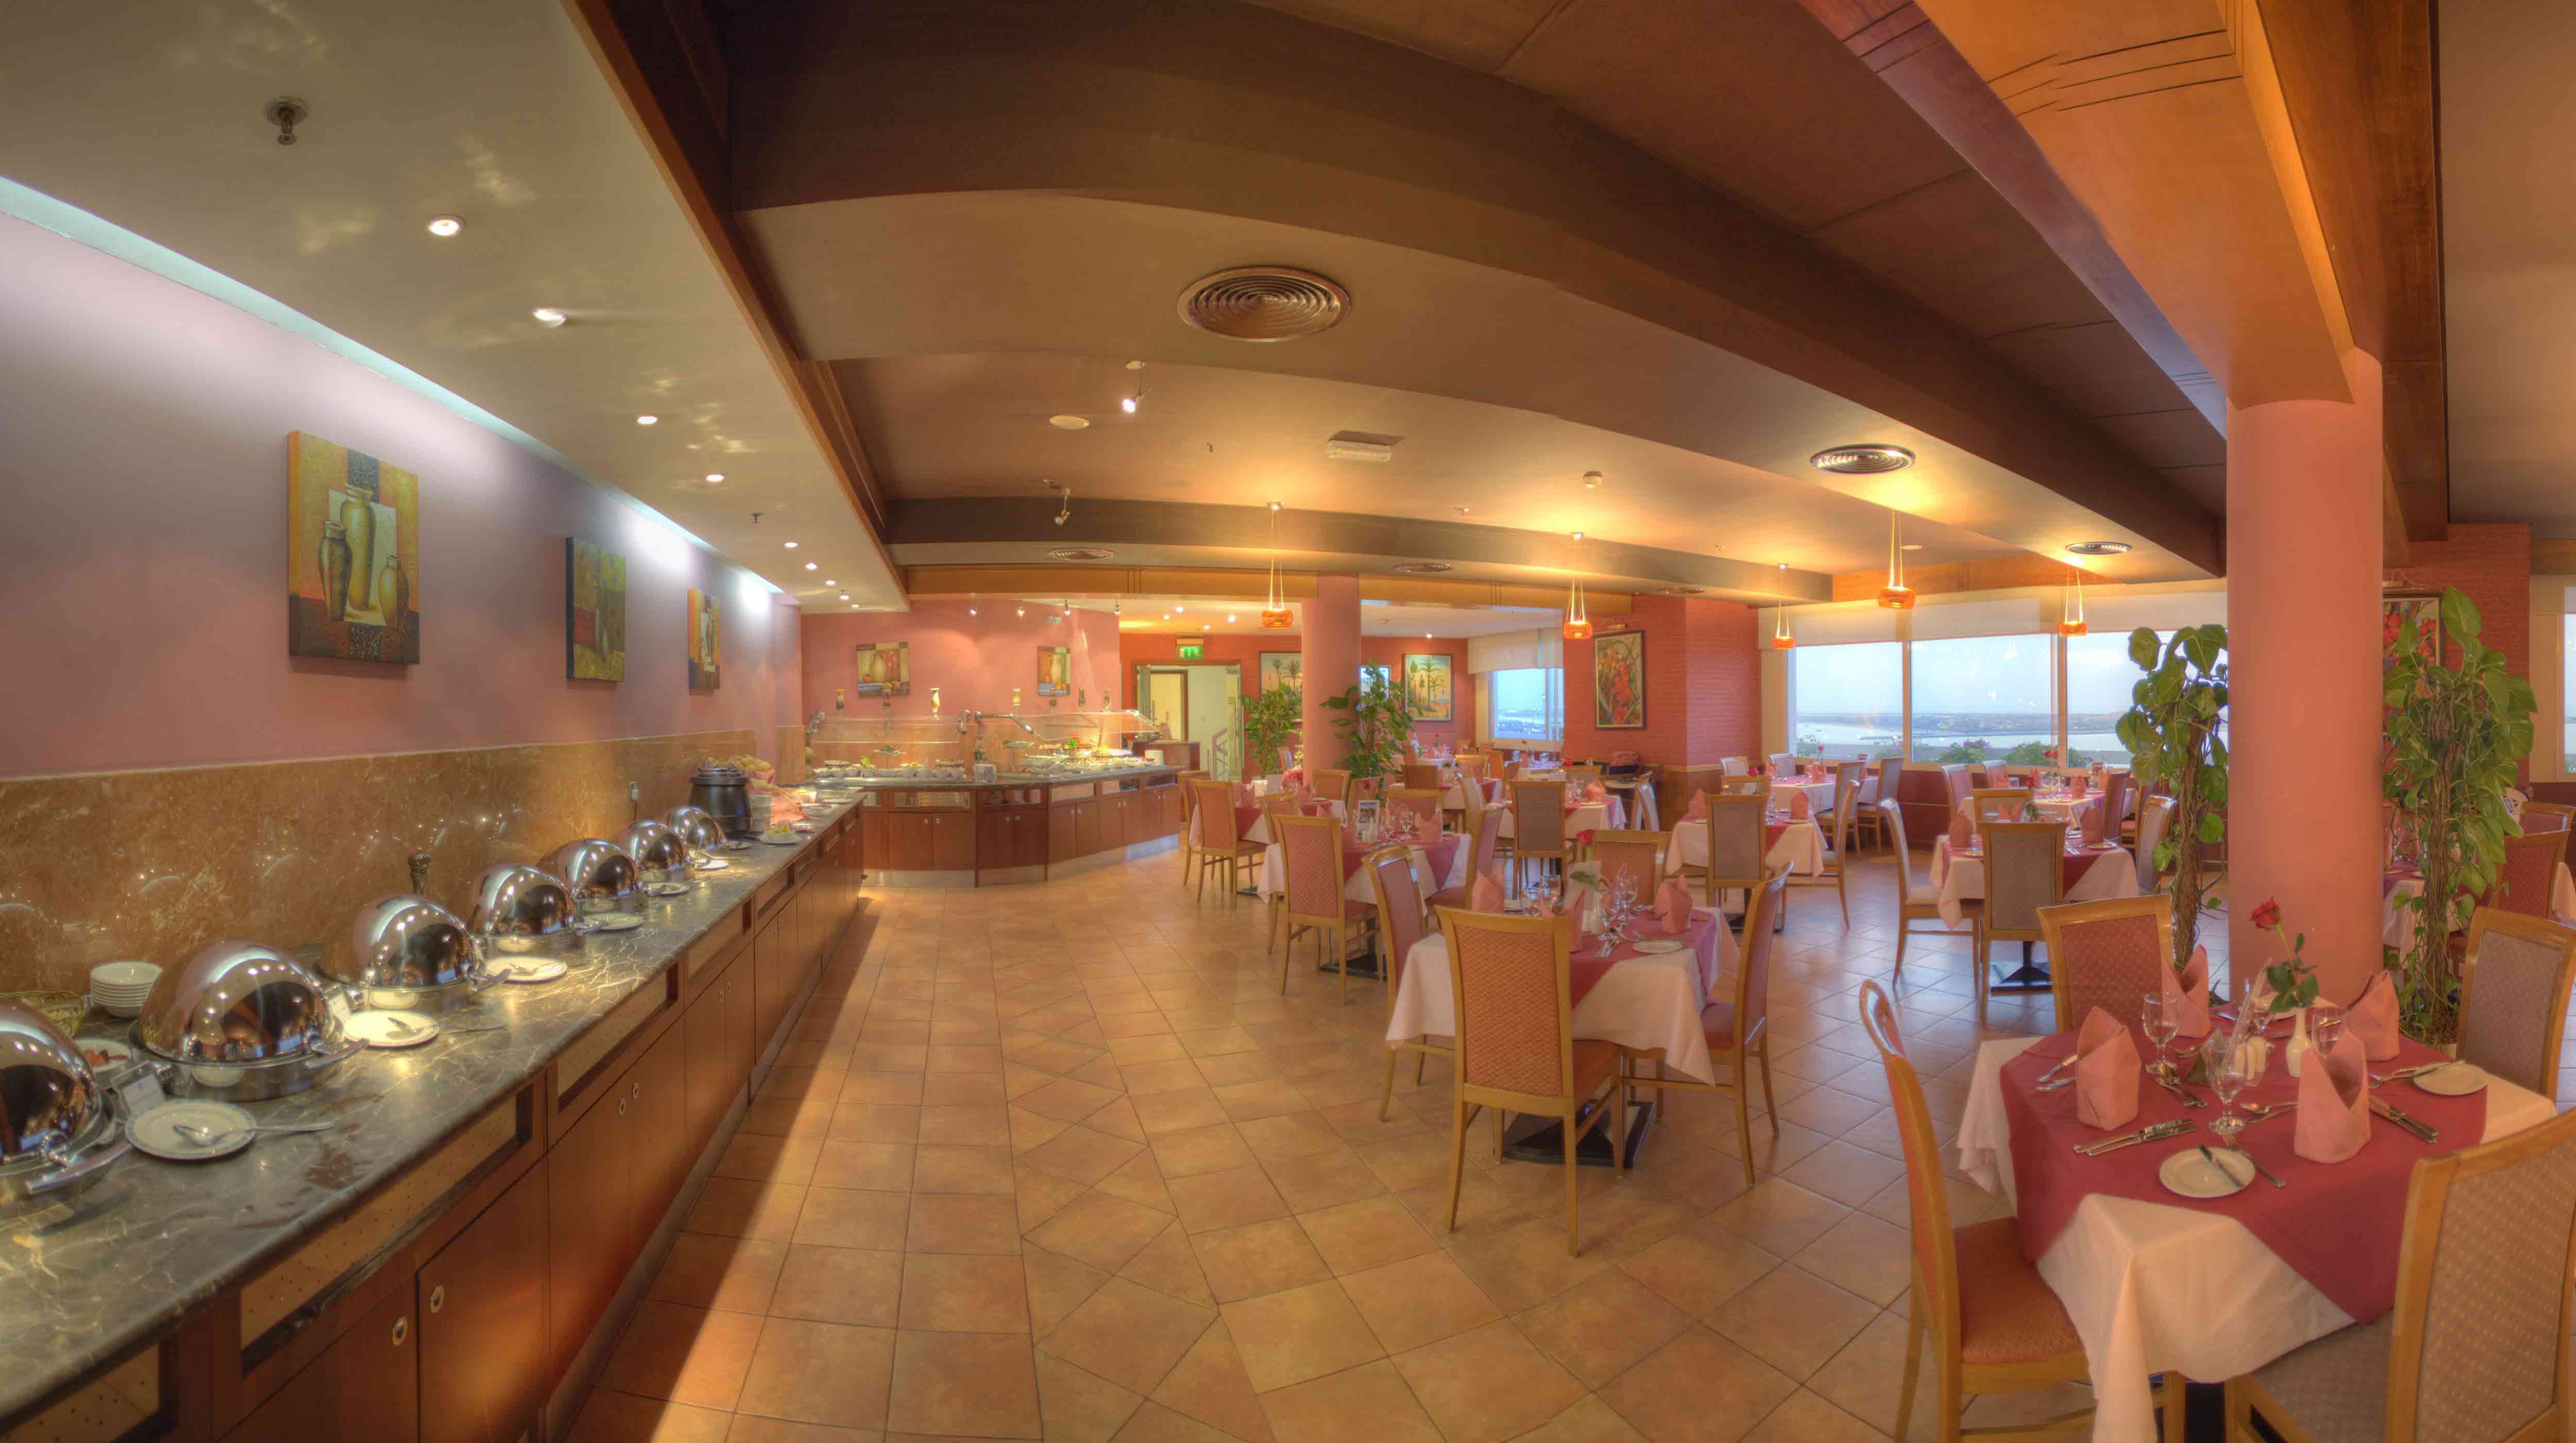 Panorama Restaurant